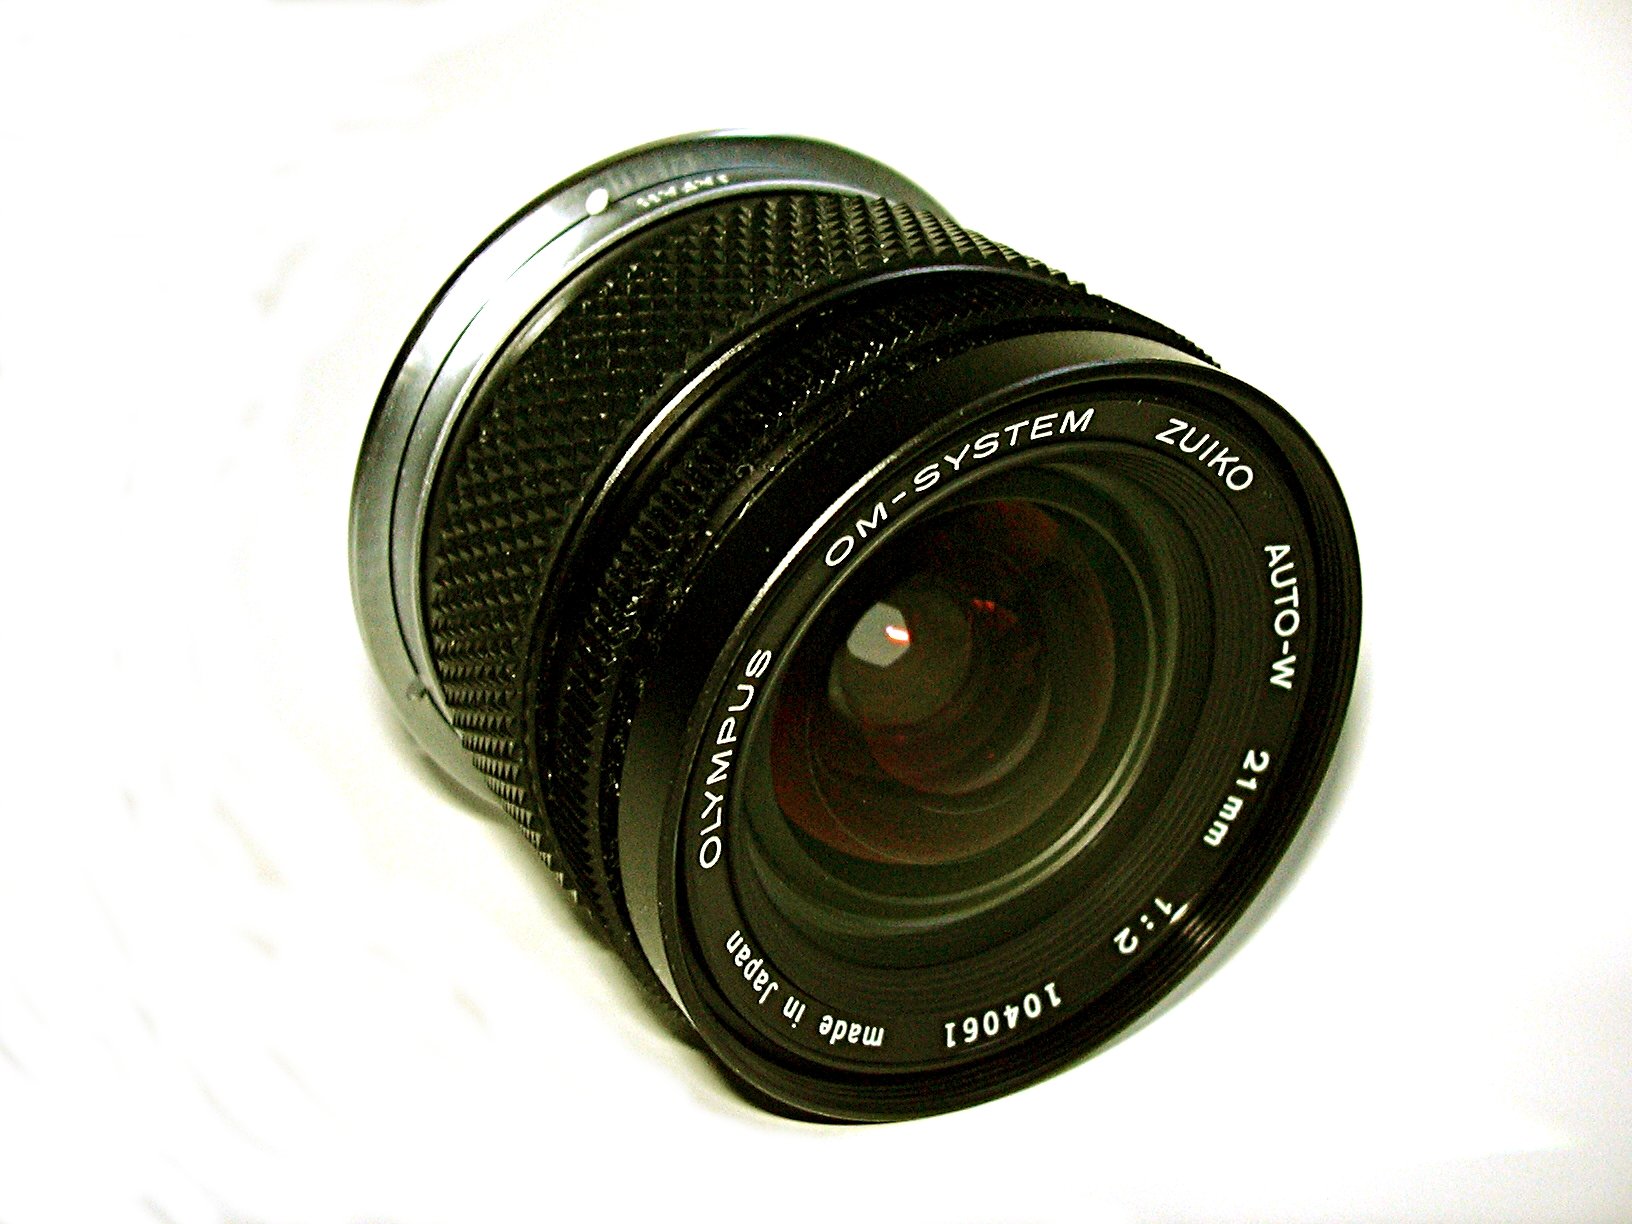 Zuiko 21mm f2 lens